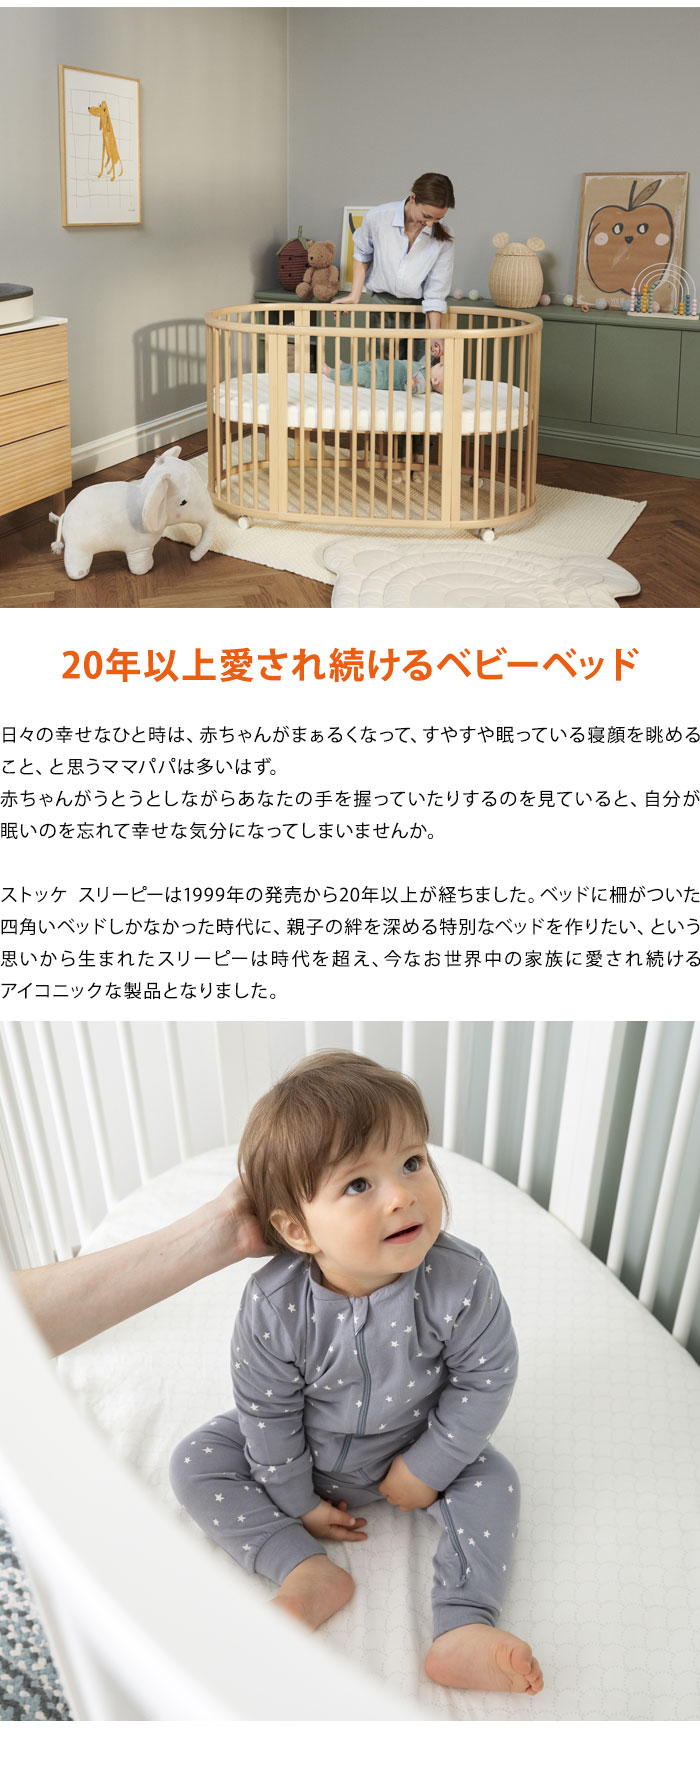 ストッケ スリーピー SLLEPI ベッドセット 専用マットレスセット付き ミニベッドに変形可能 ベビーベッド 新生児から5歳ごろまで 乳児ベッド  代引不可